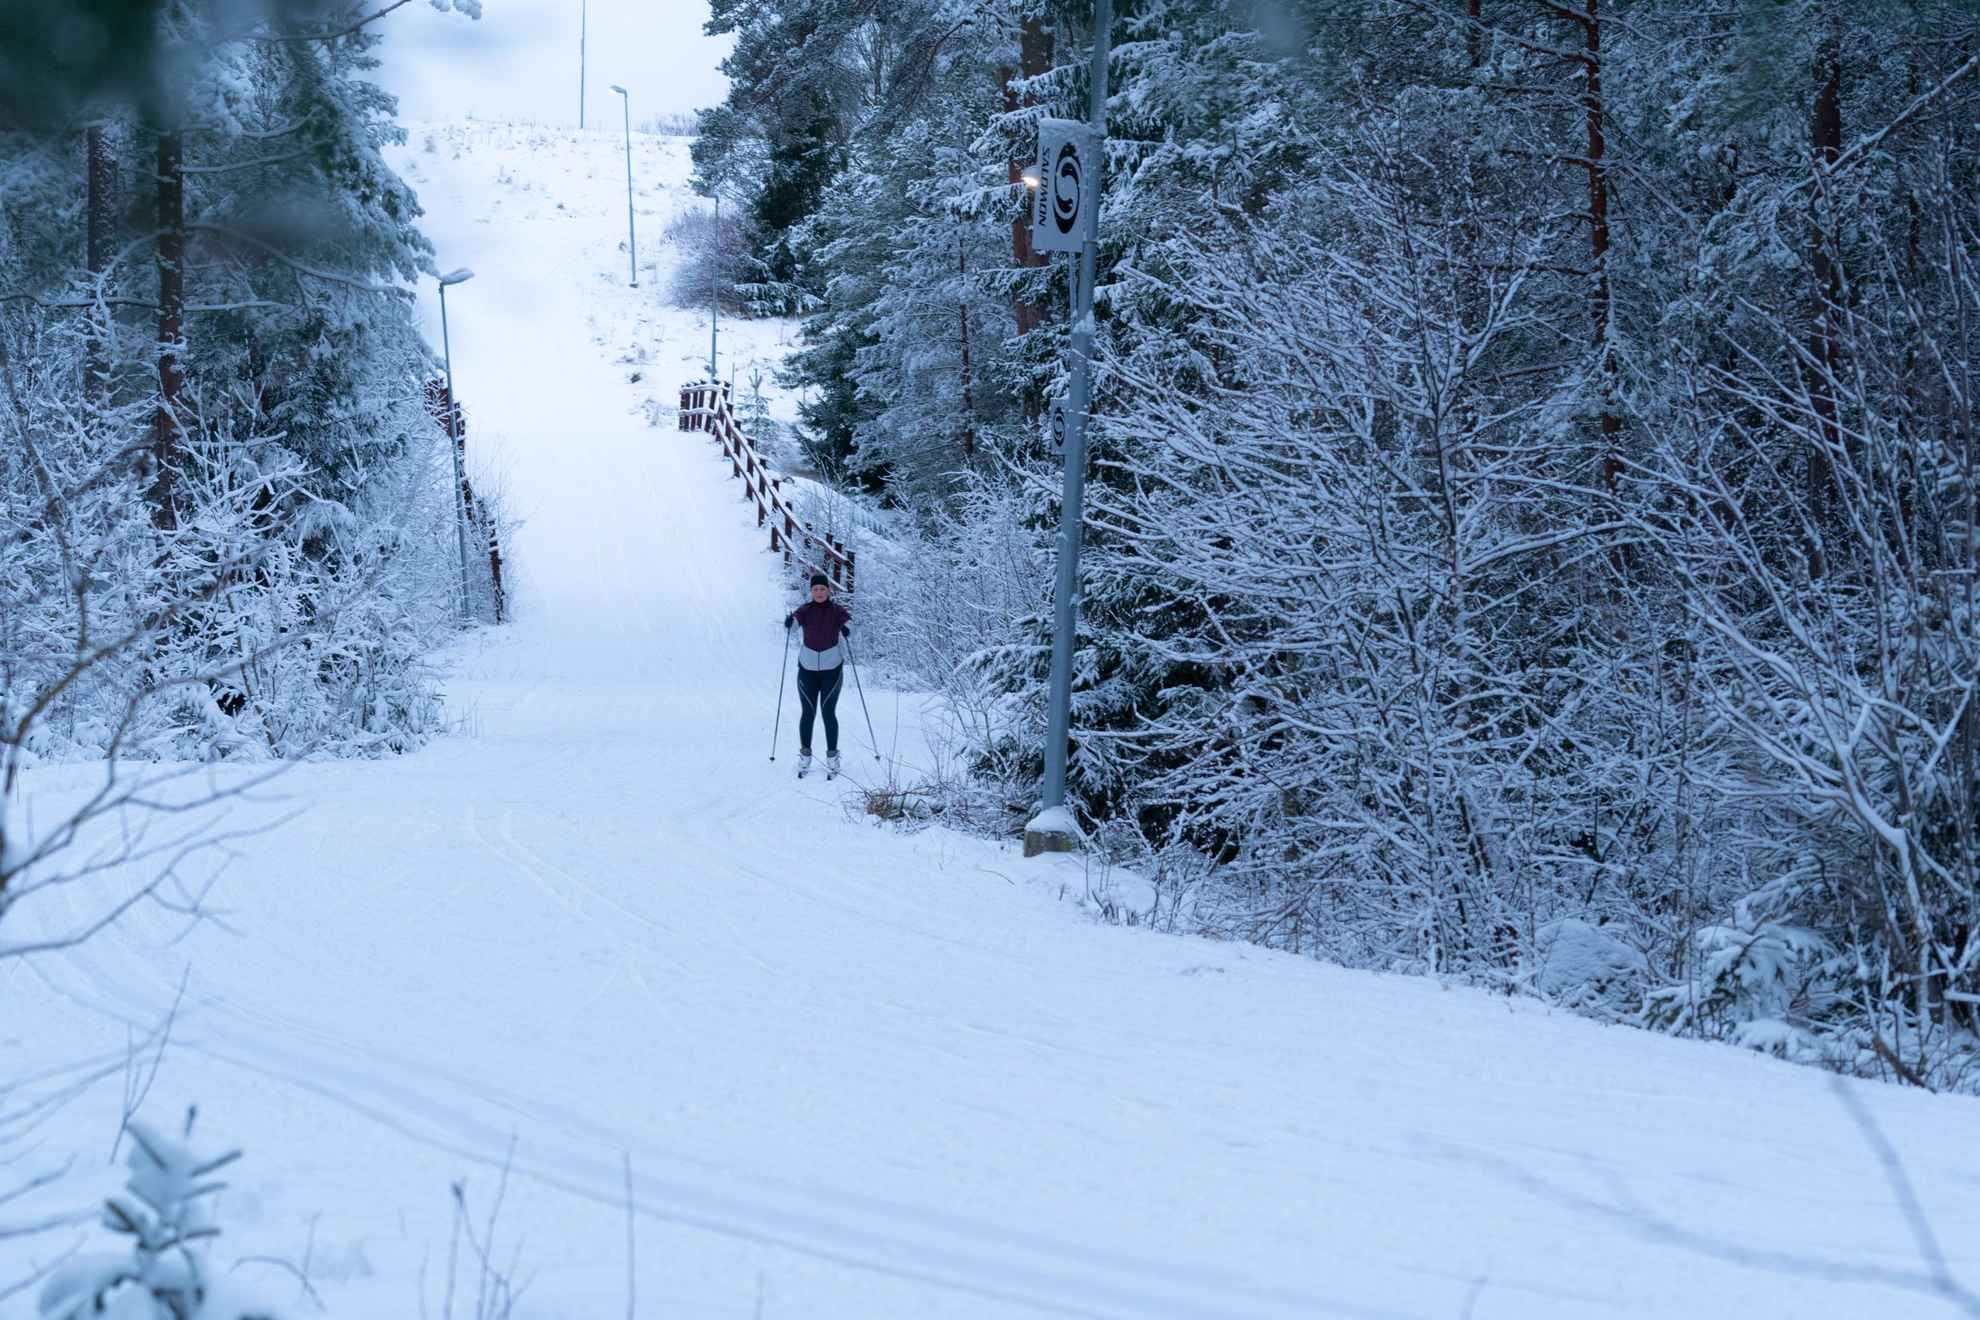 Une personne fait du ski de fond sur des pistes préparées dans la nature.